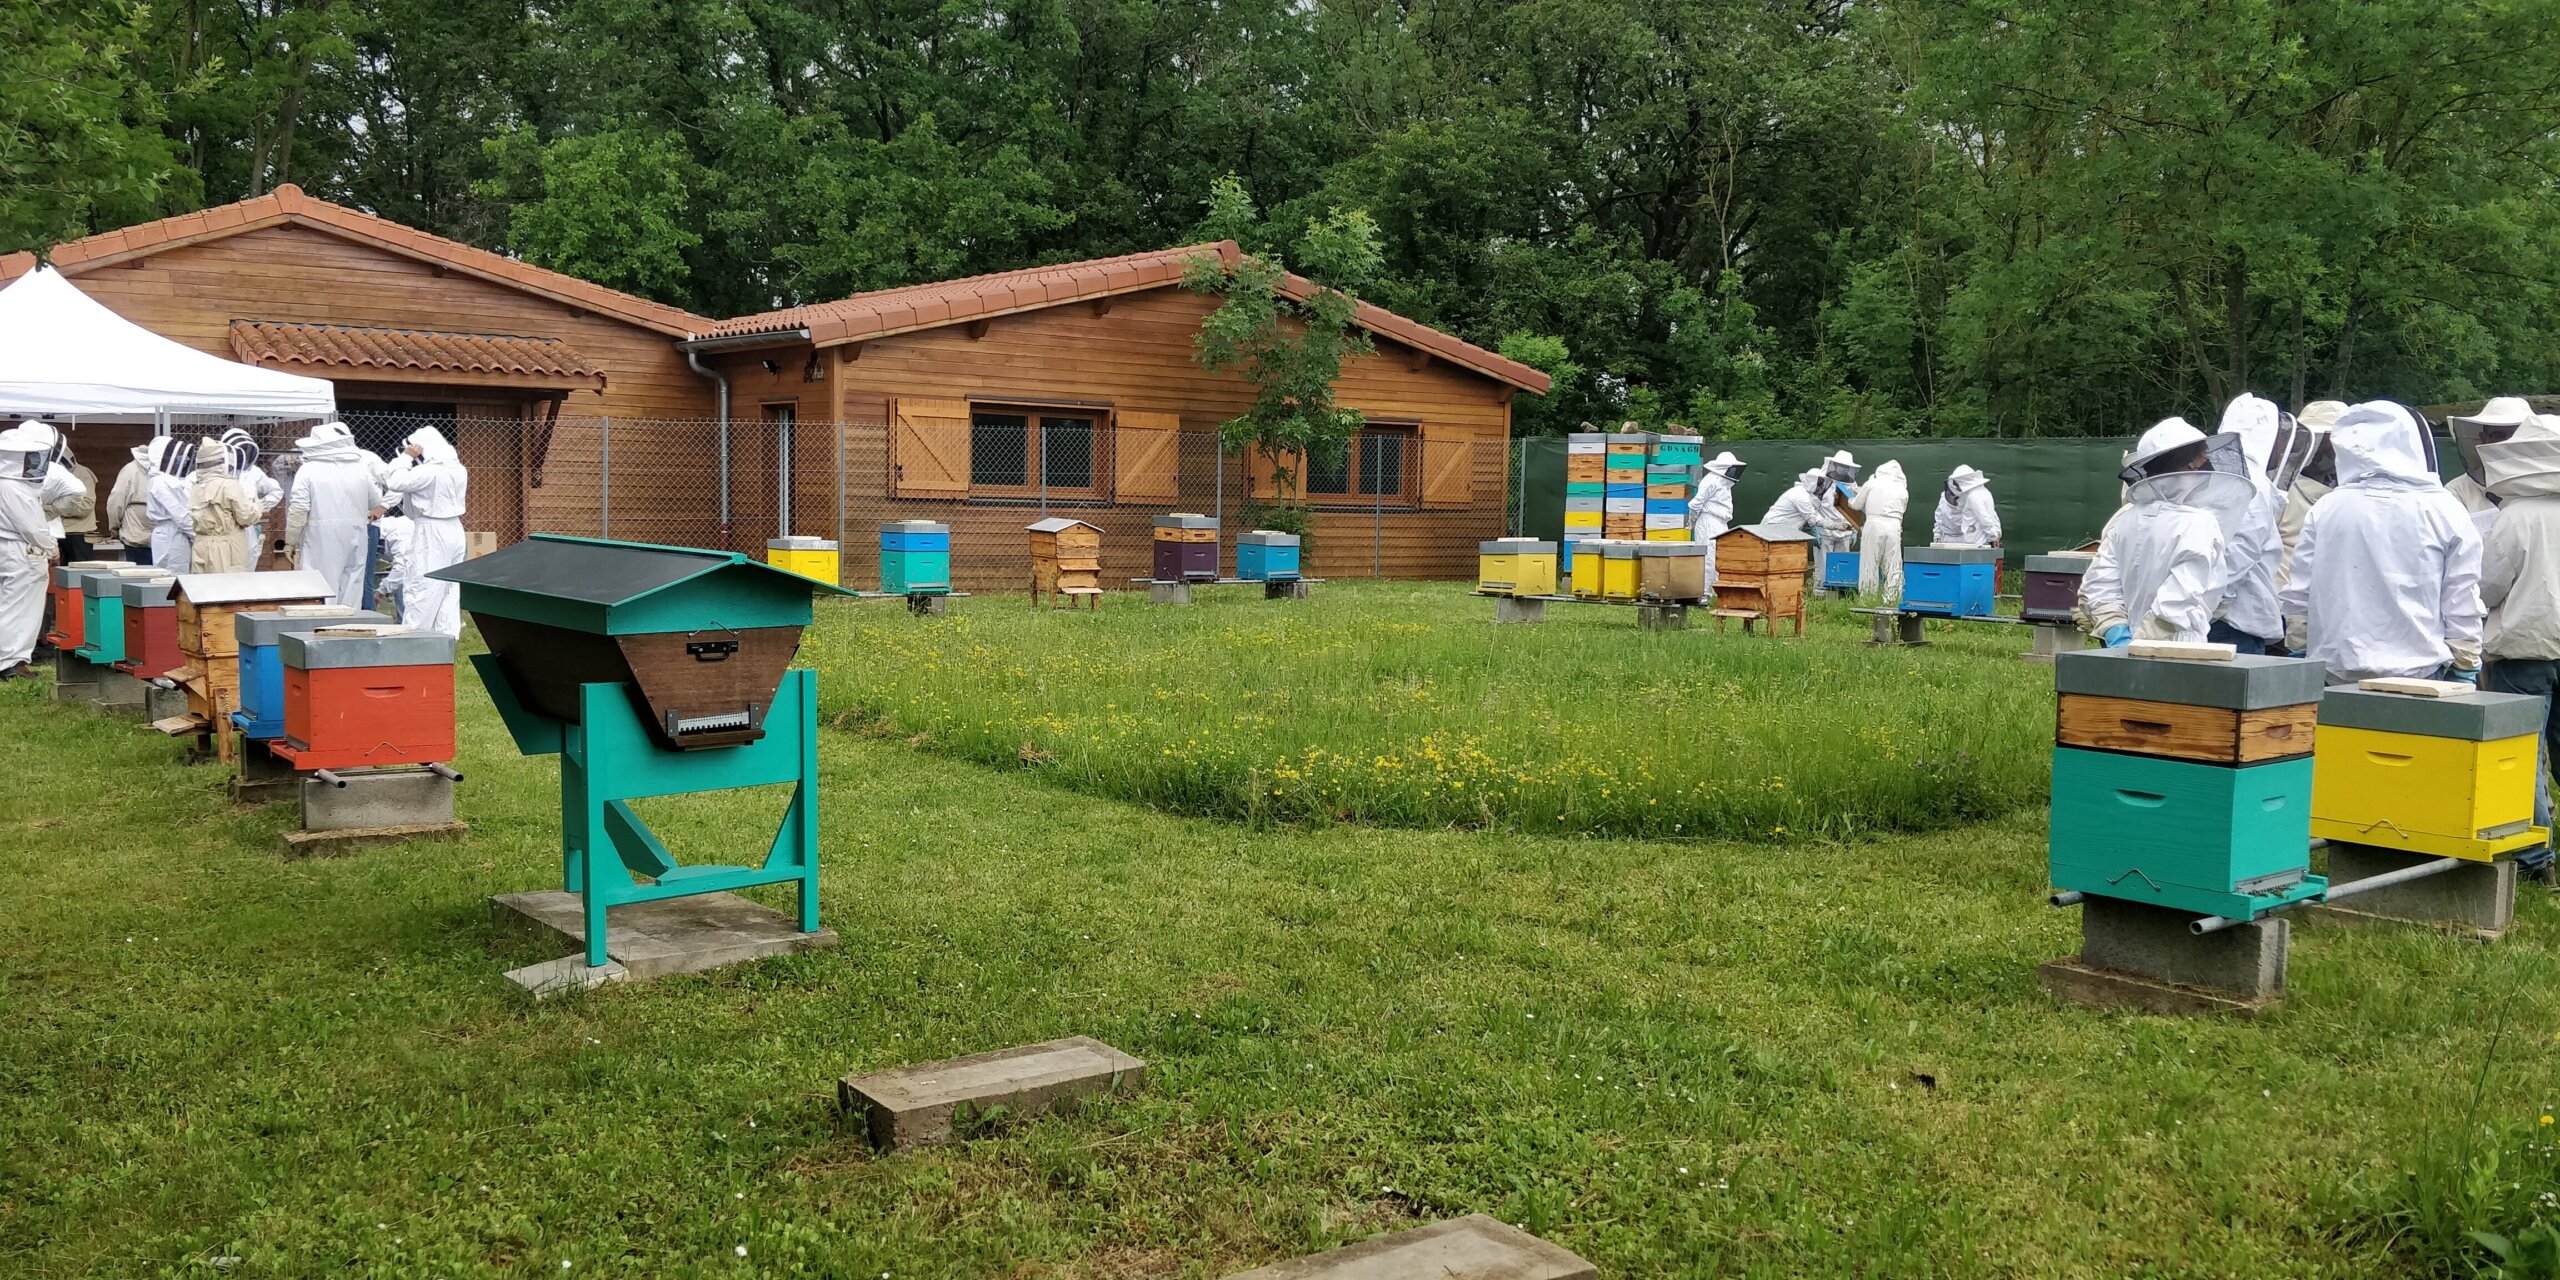 Le syndicat des apiculteurs du Rhône qui propose des formations à l'apiculture, à l'école de Marcy-l’Etoile, sur le campus de l’école vétérinaire VetAgroSup